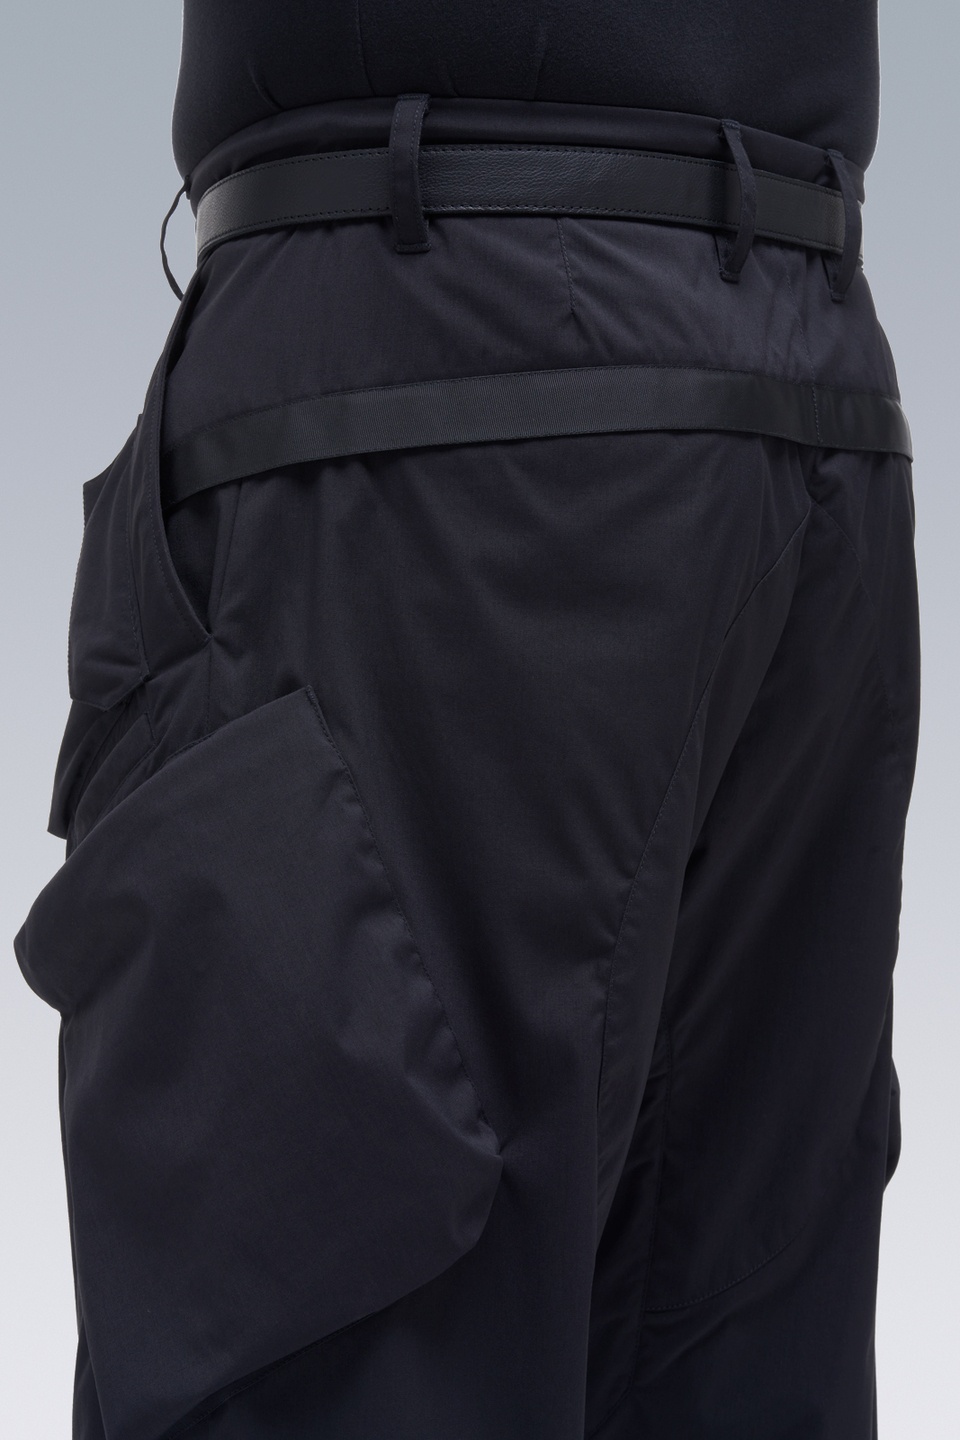 P24A-E Encapsulated Nylon Articulated BDU Trouser Black - 18